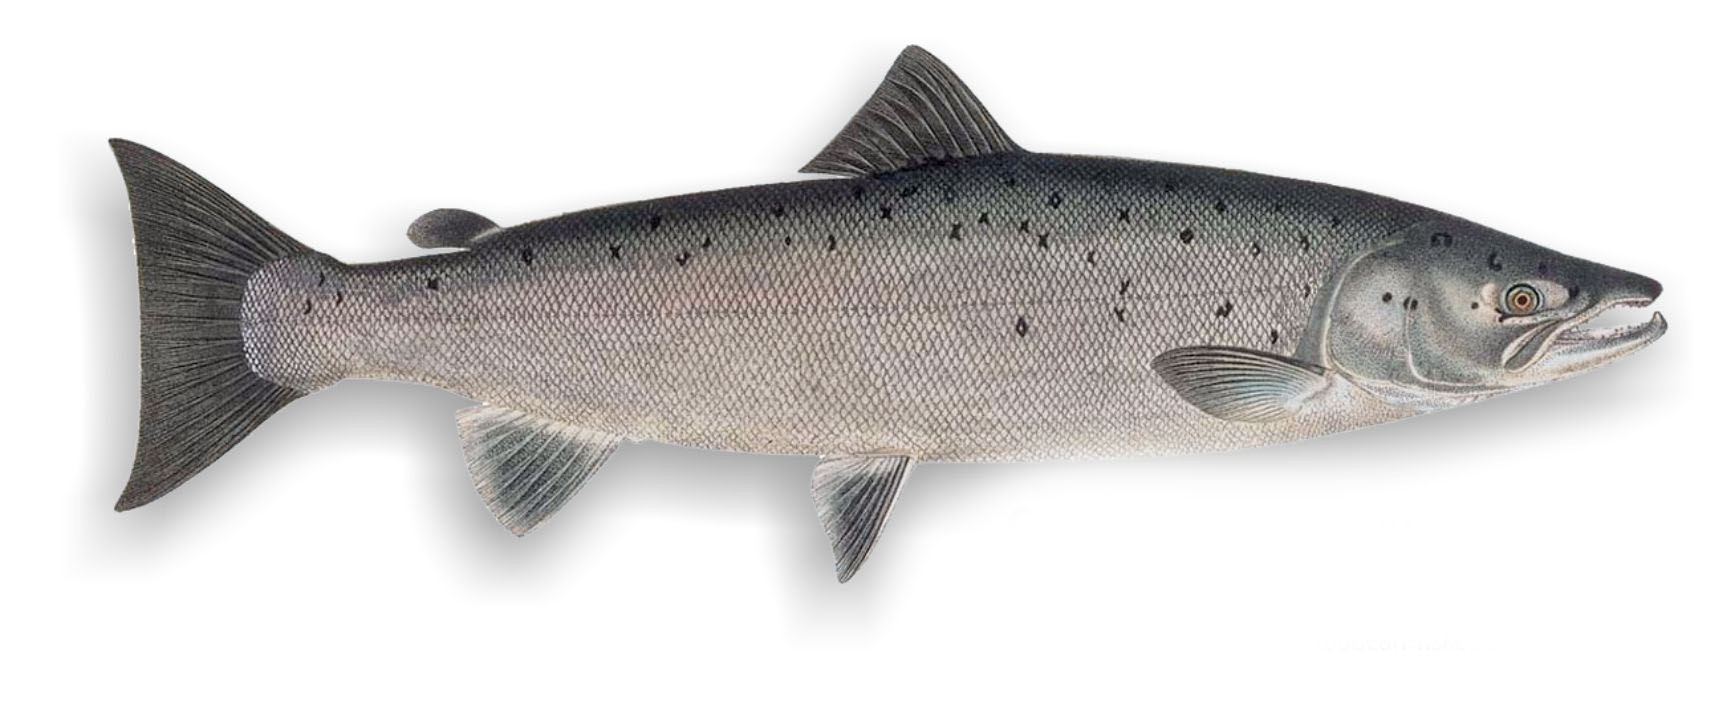 Сёмга или атлантический лосось